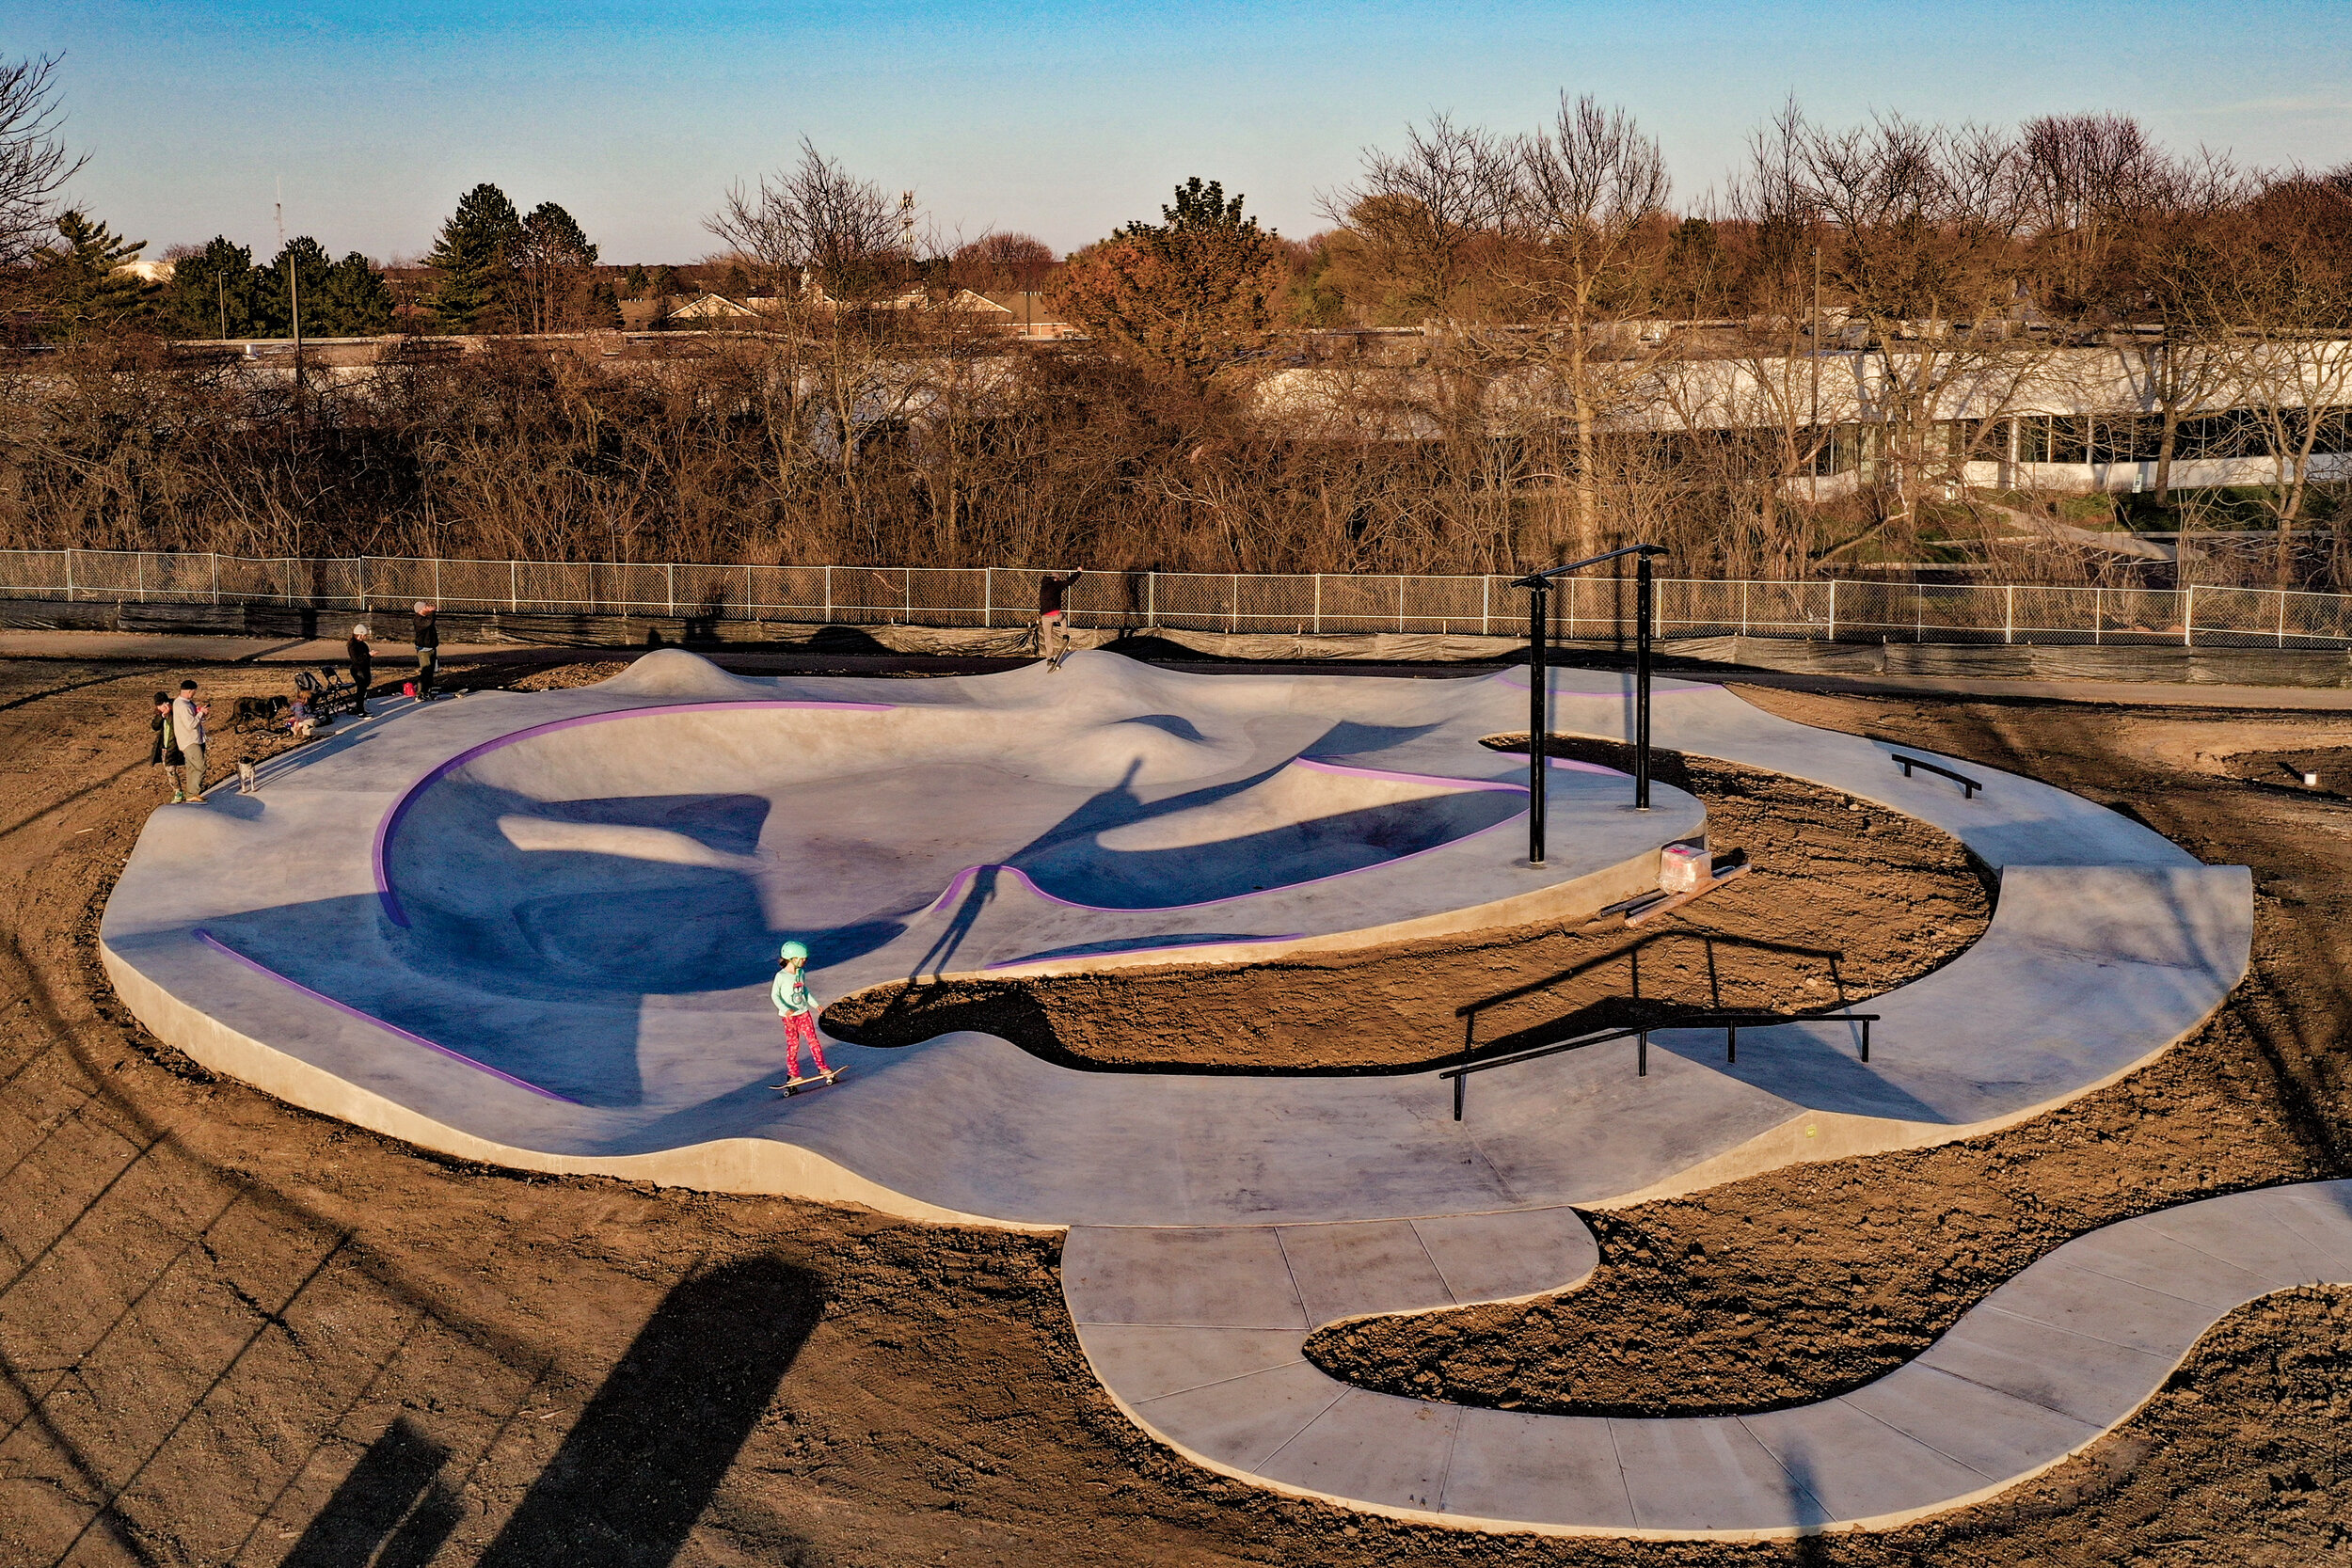 Perfect neighborhood mini skatepark 👌🏽